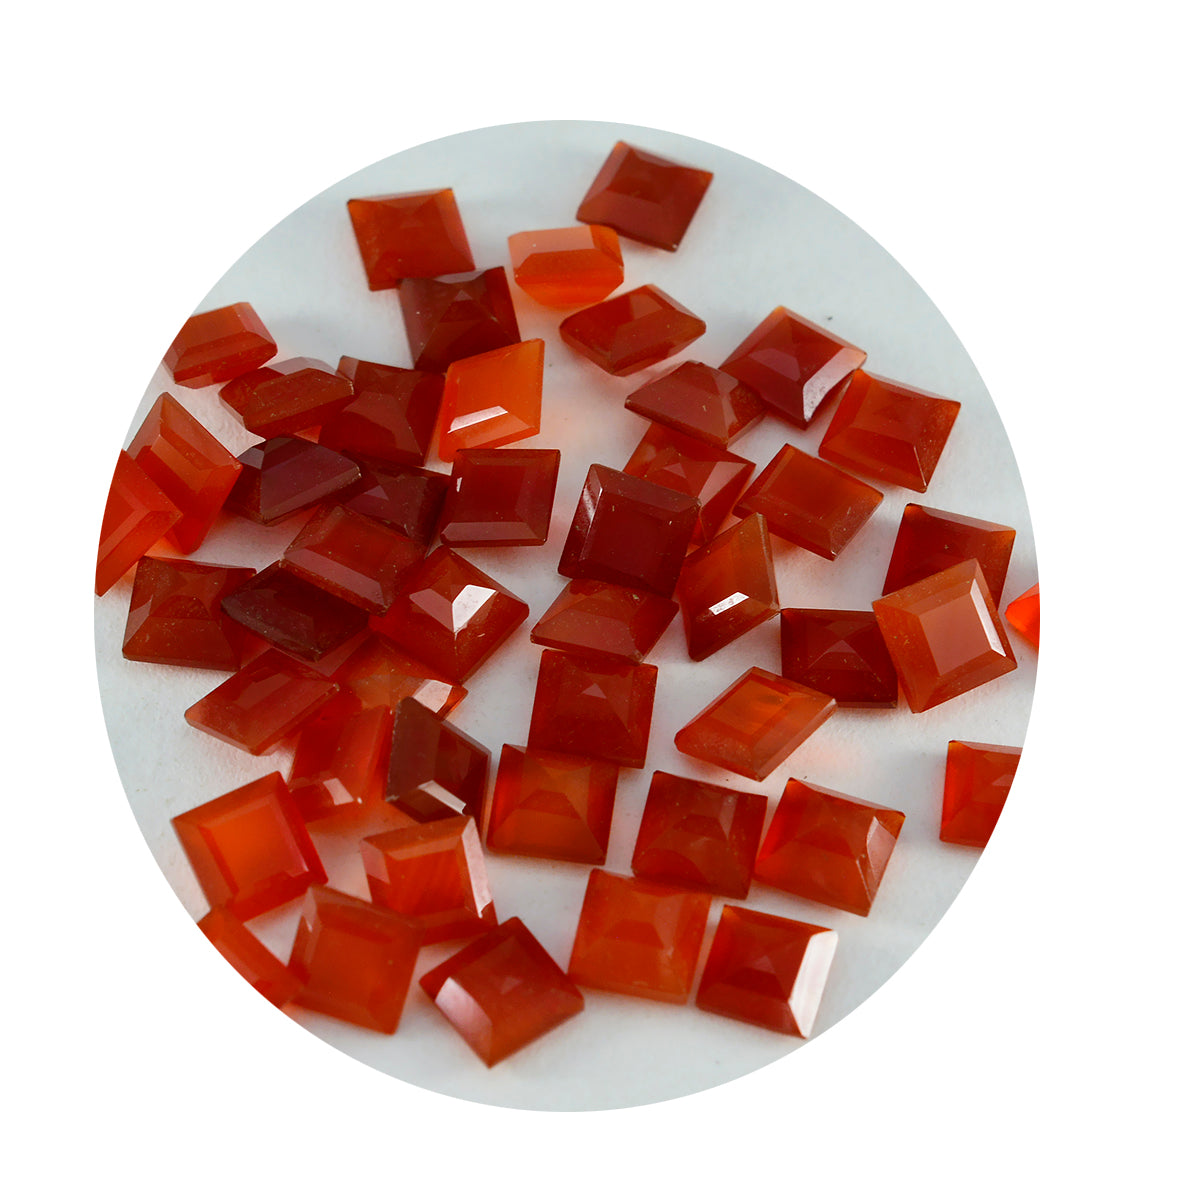 riyogems 1 шт. натуральный красный оникс ограненный 5x5 мм квадратной формы красивые качественные драгоценные камни